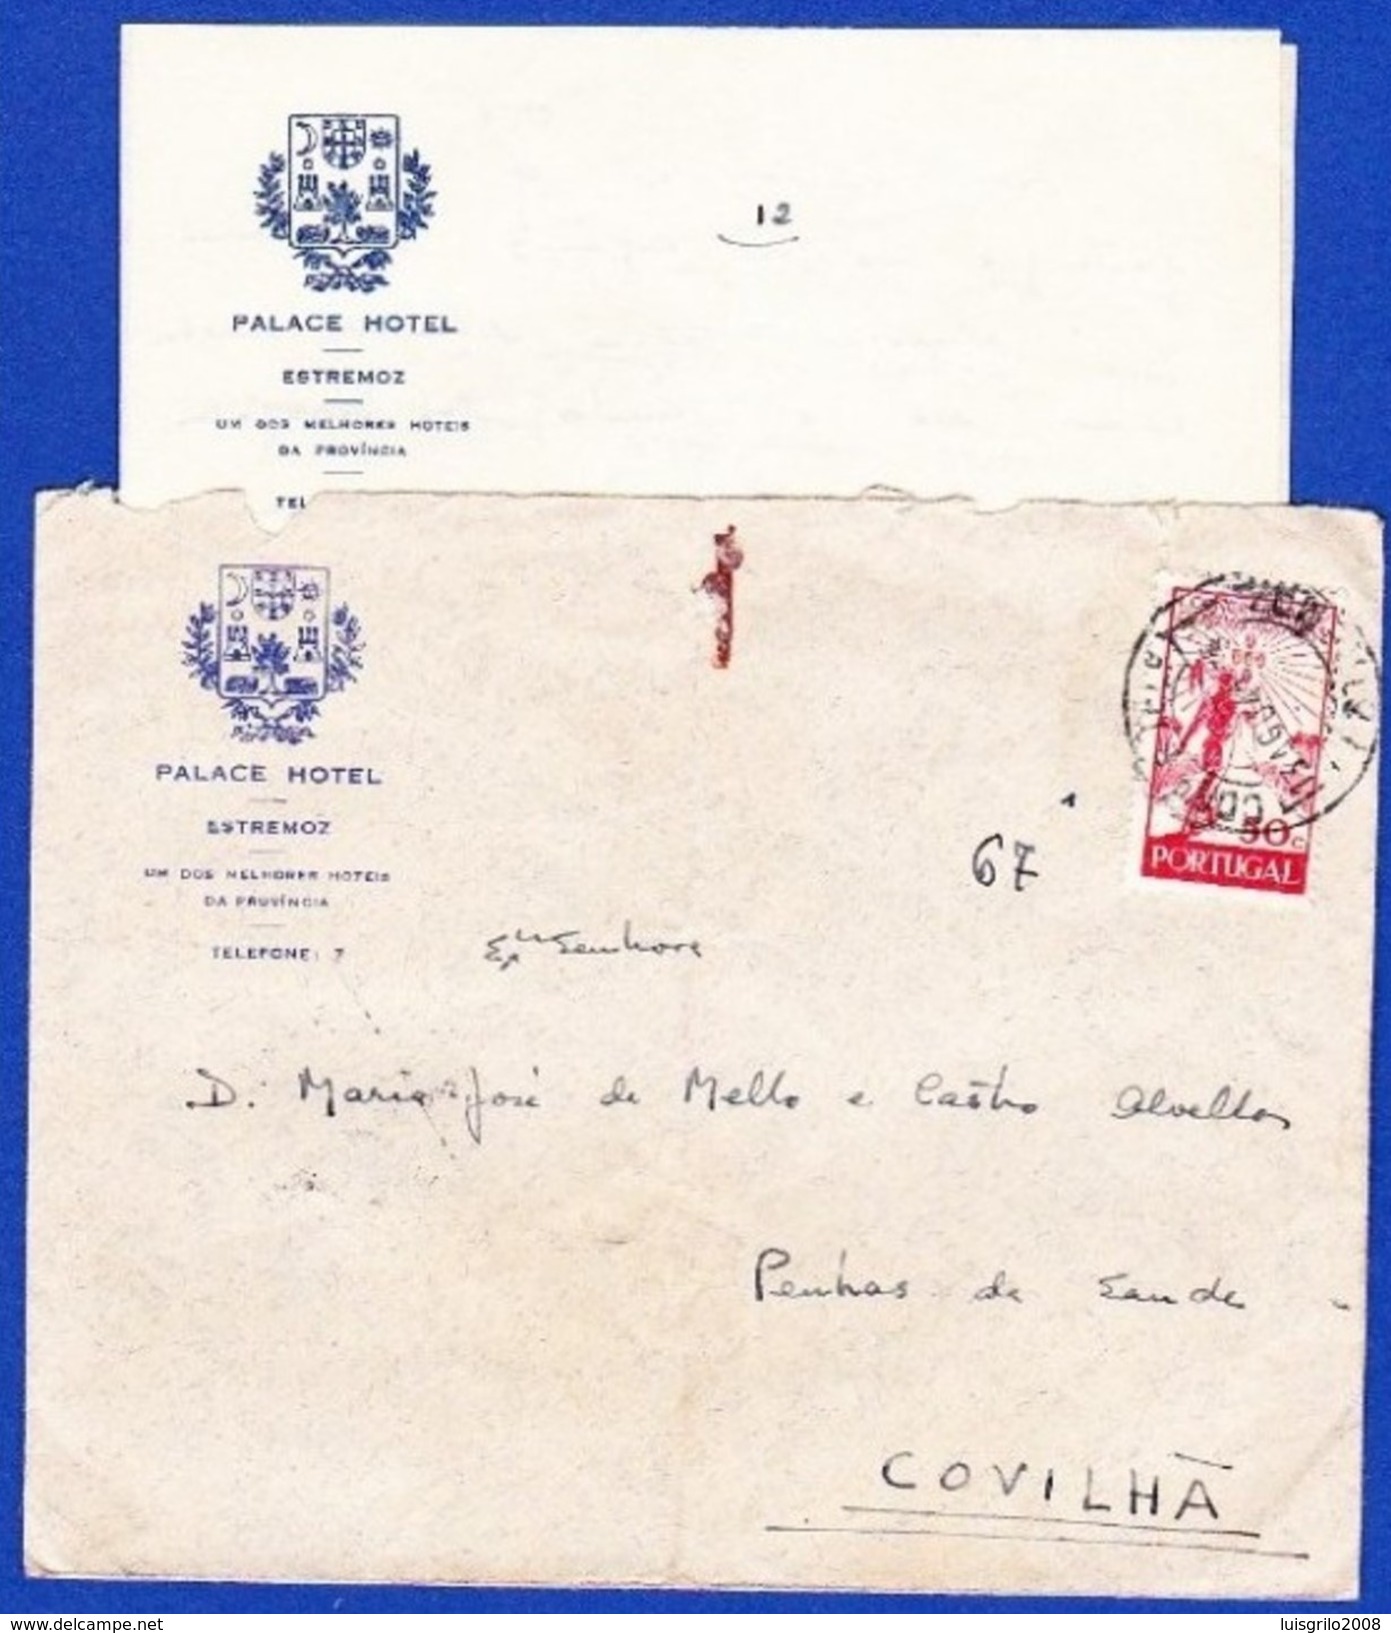 PALACE HOTEL . ESTREMOZ - Cover + Letter, Estremoz To Covilhã // Cancel - Estremoz, 13.Ago.1944 - Briefe U. Dokumente